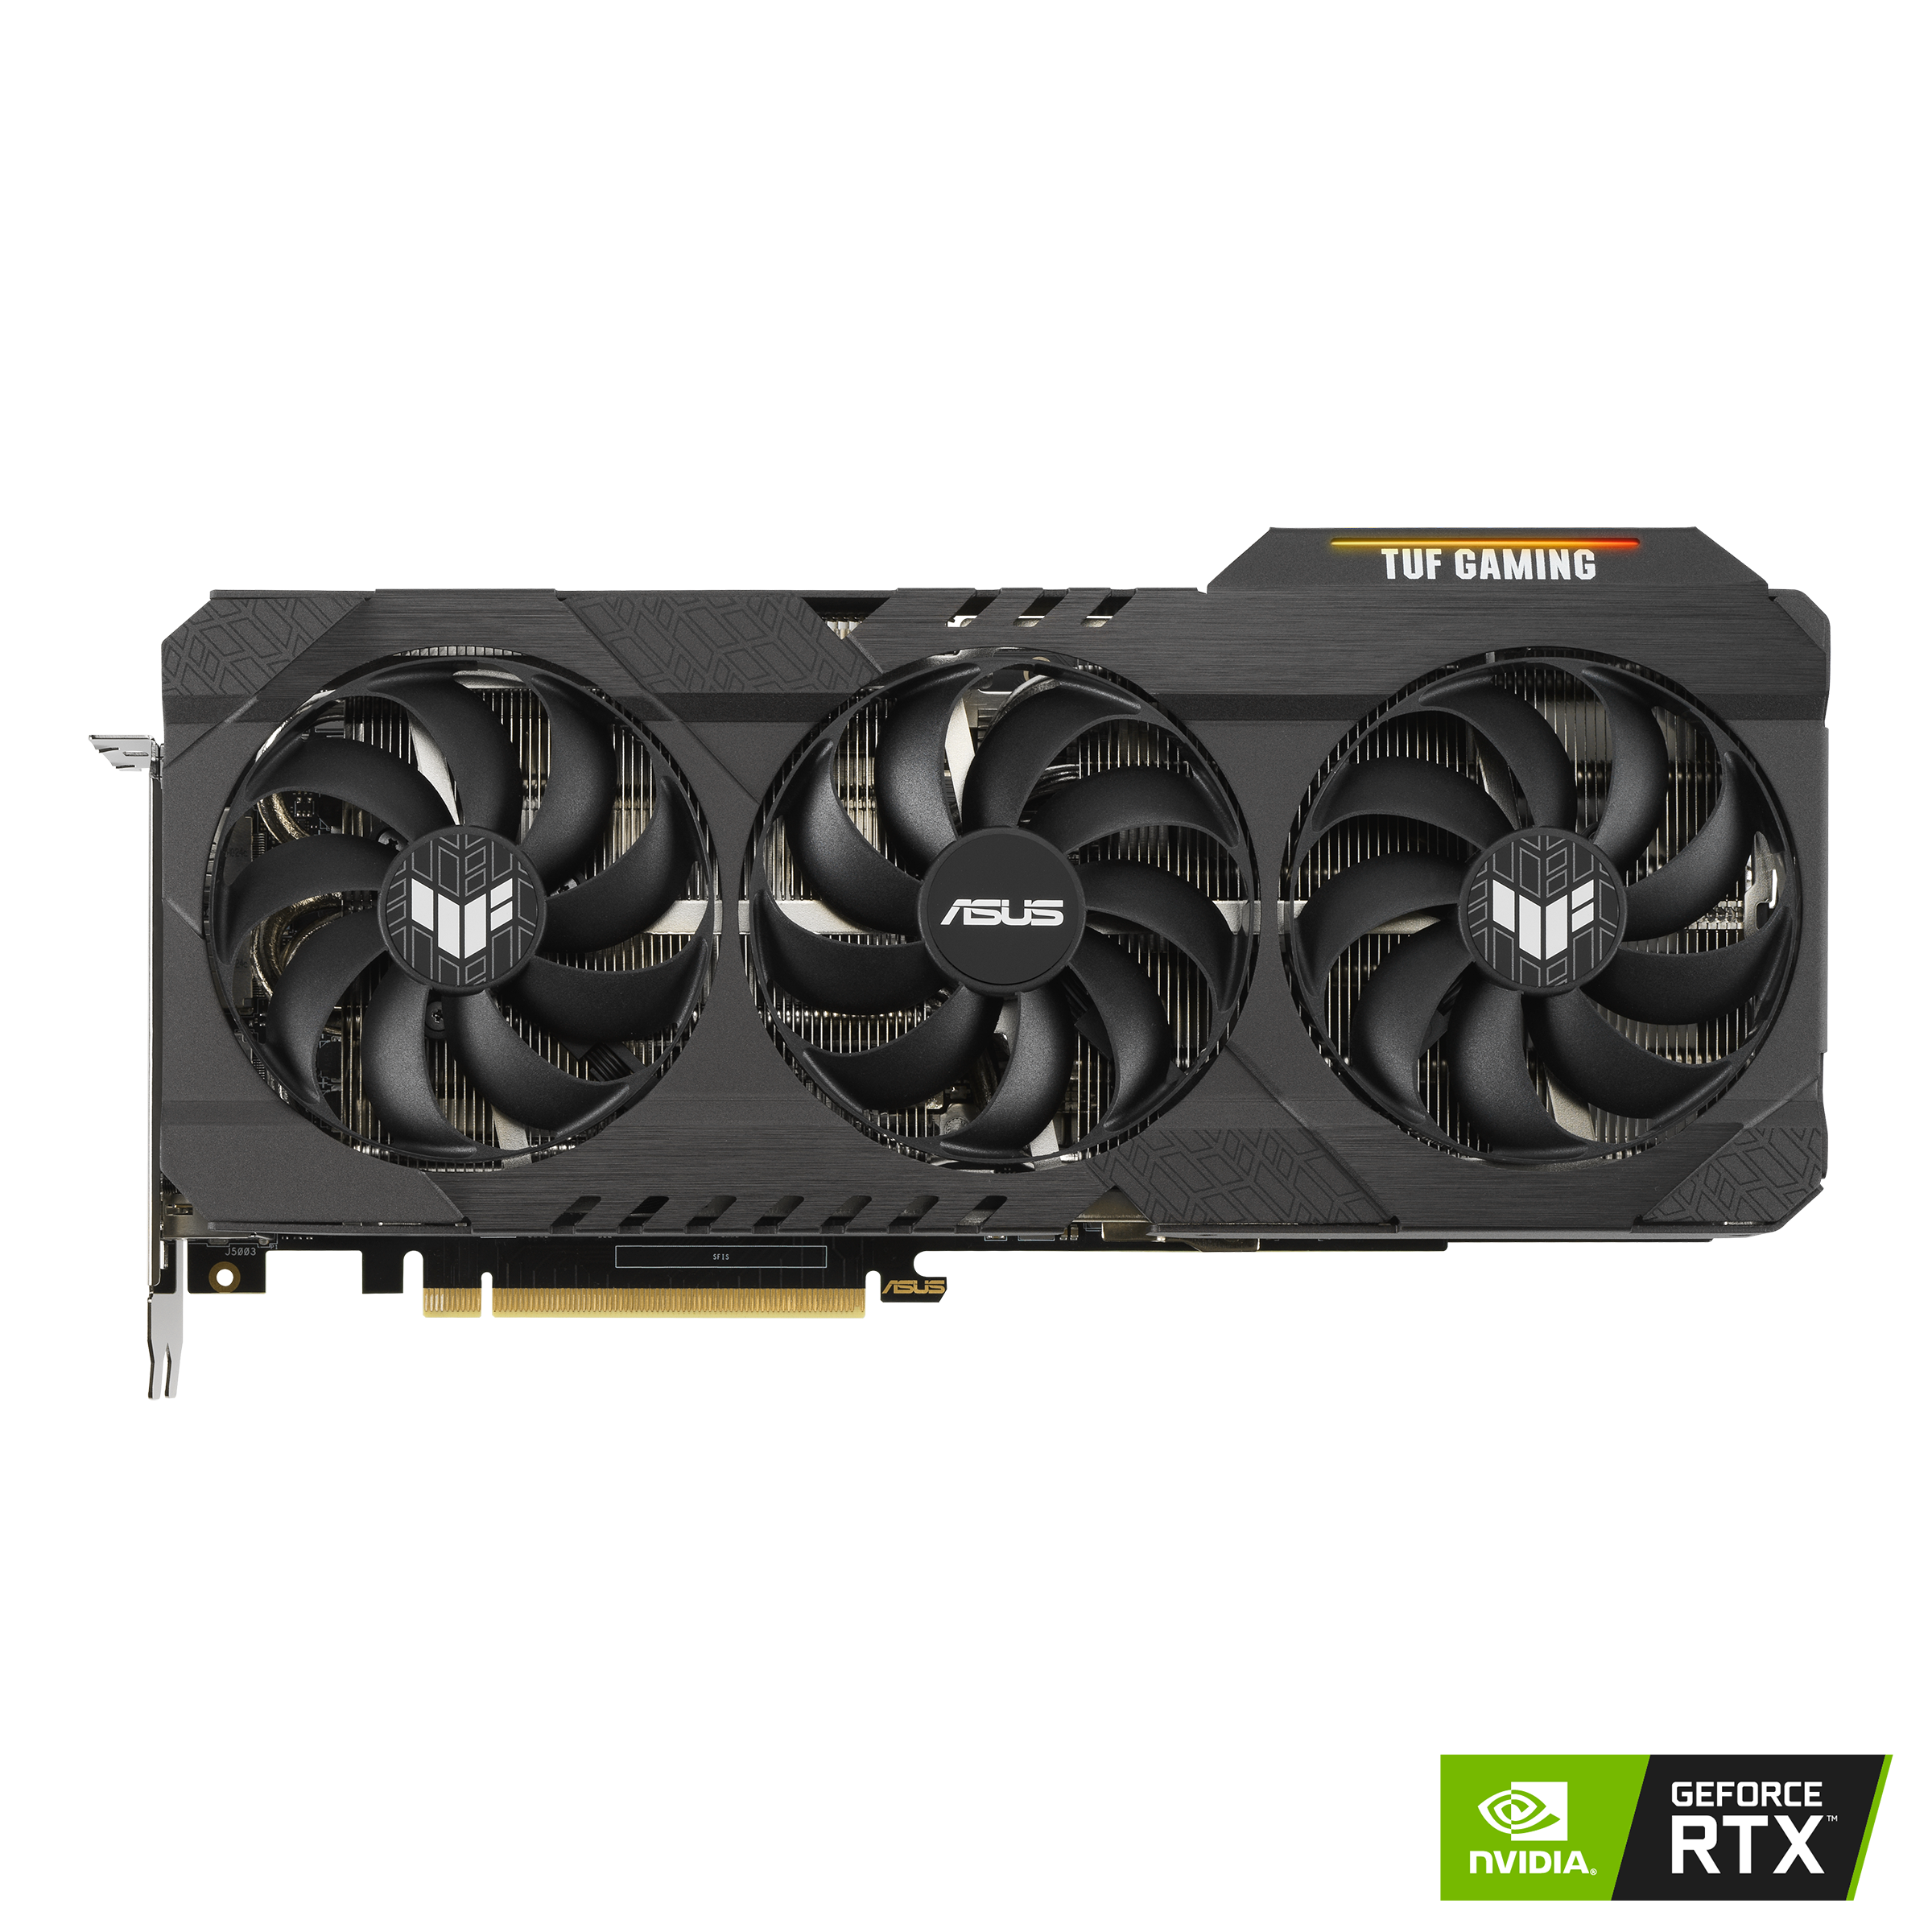 TUF Gaming GeForce RTX™ 3080 V2 10GB GDDR6X